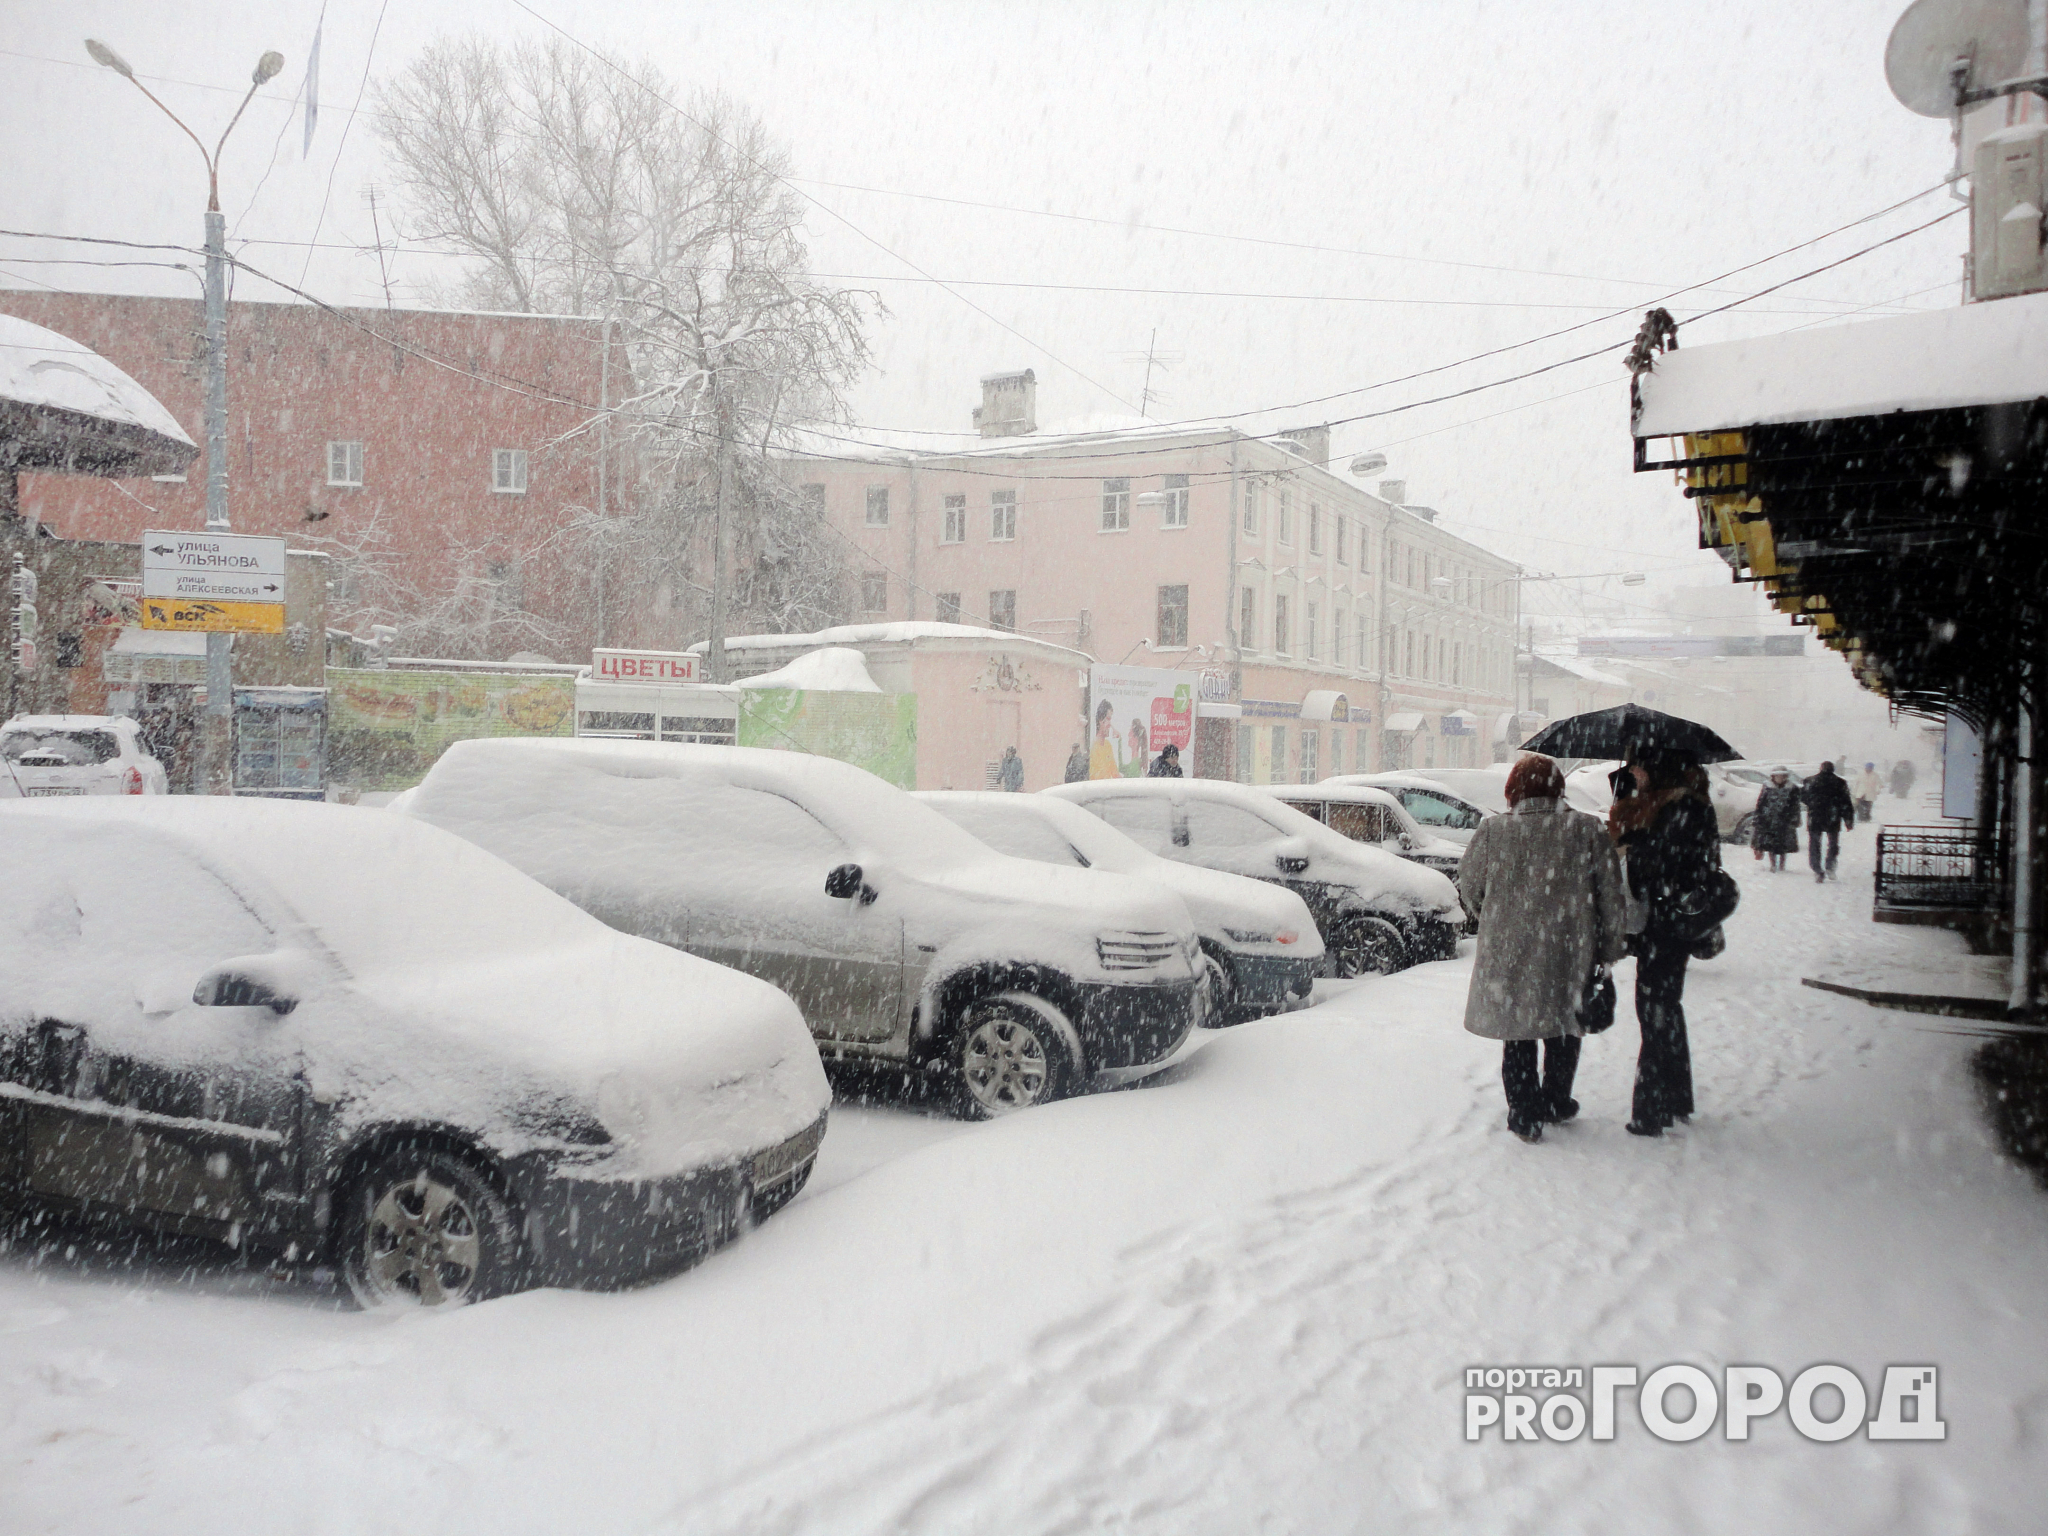 Прогноз погоды: какой будет предновогодняя рабочая неделя в Нижнем Новгороде?